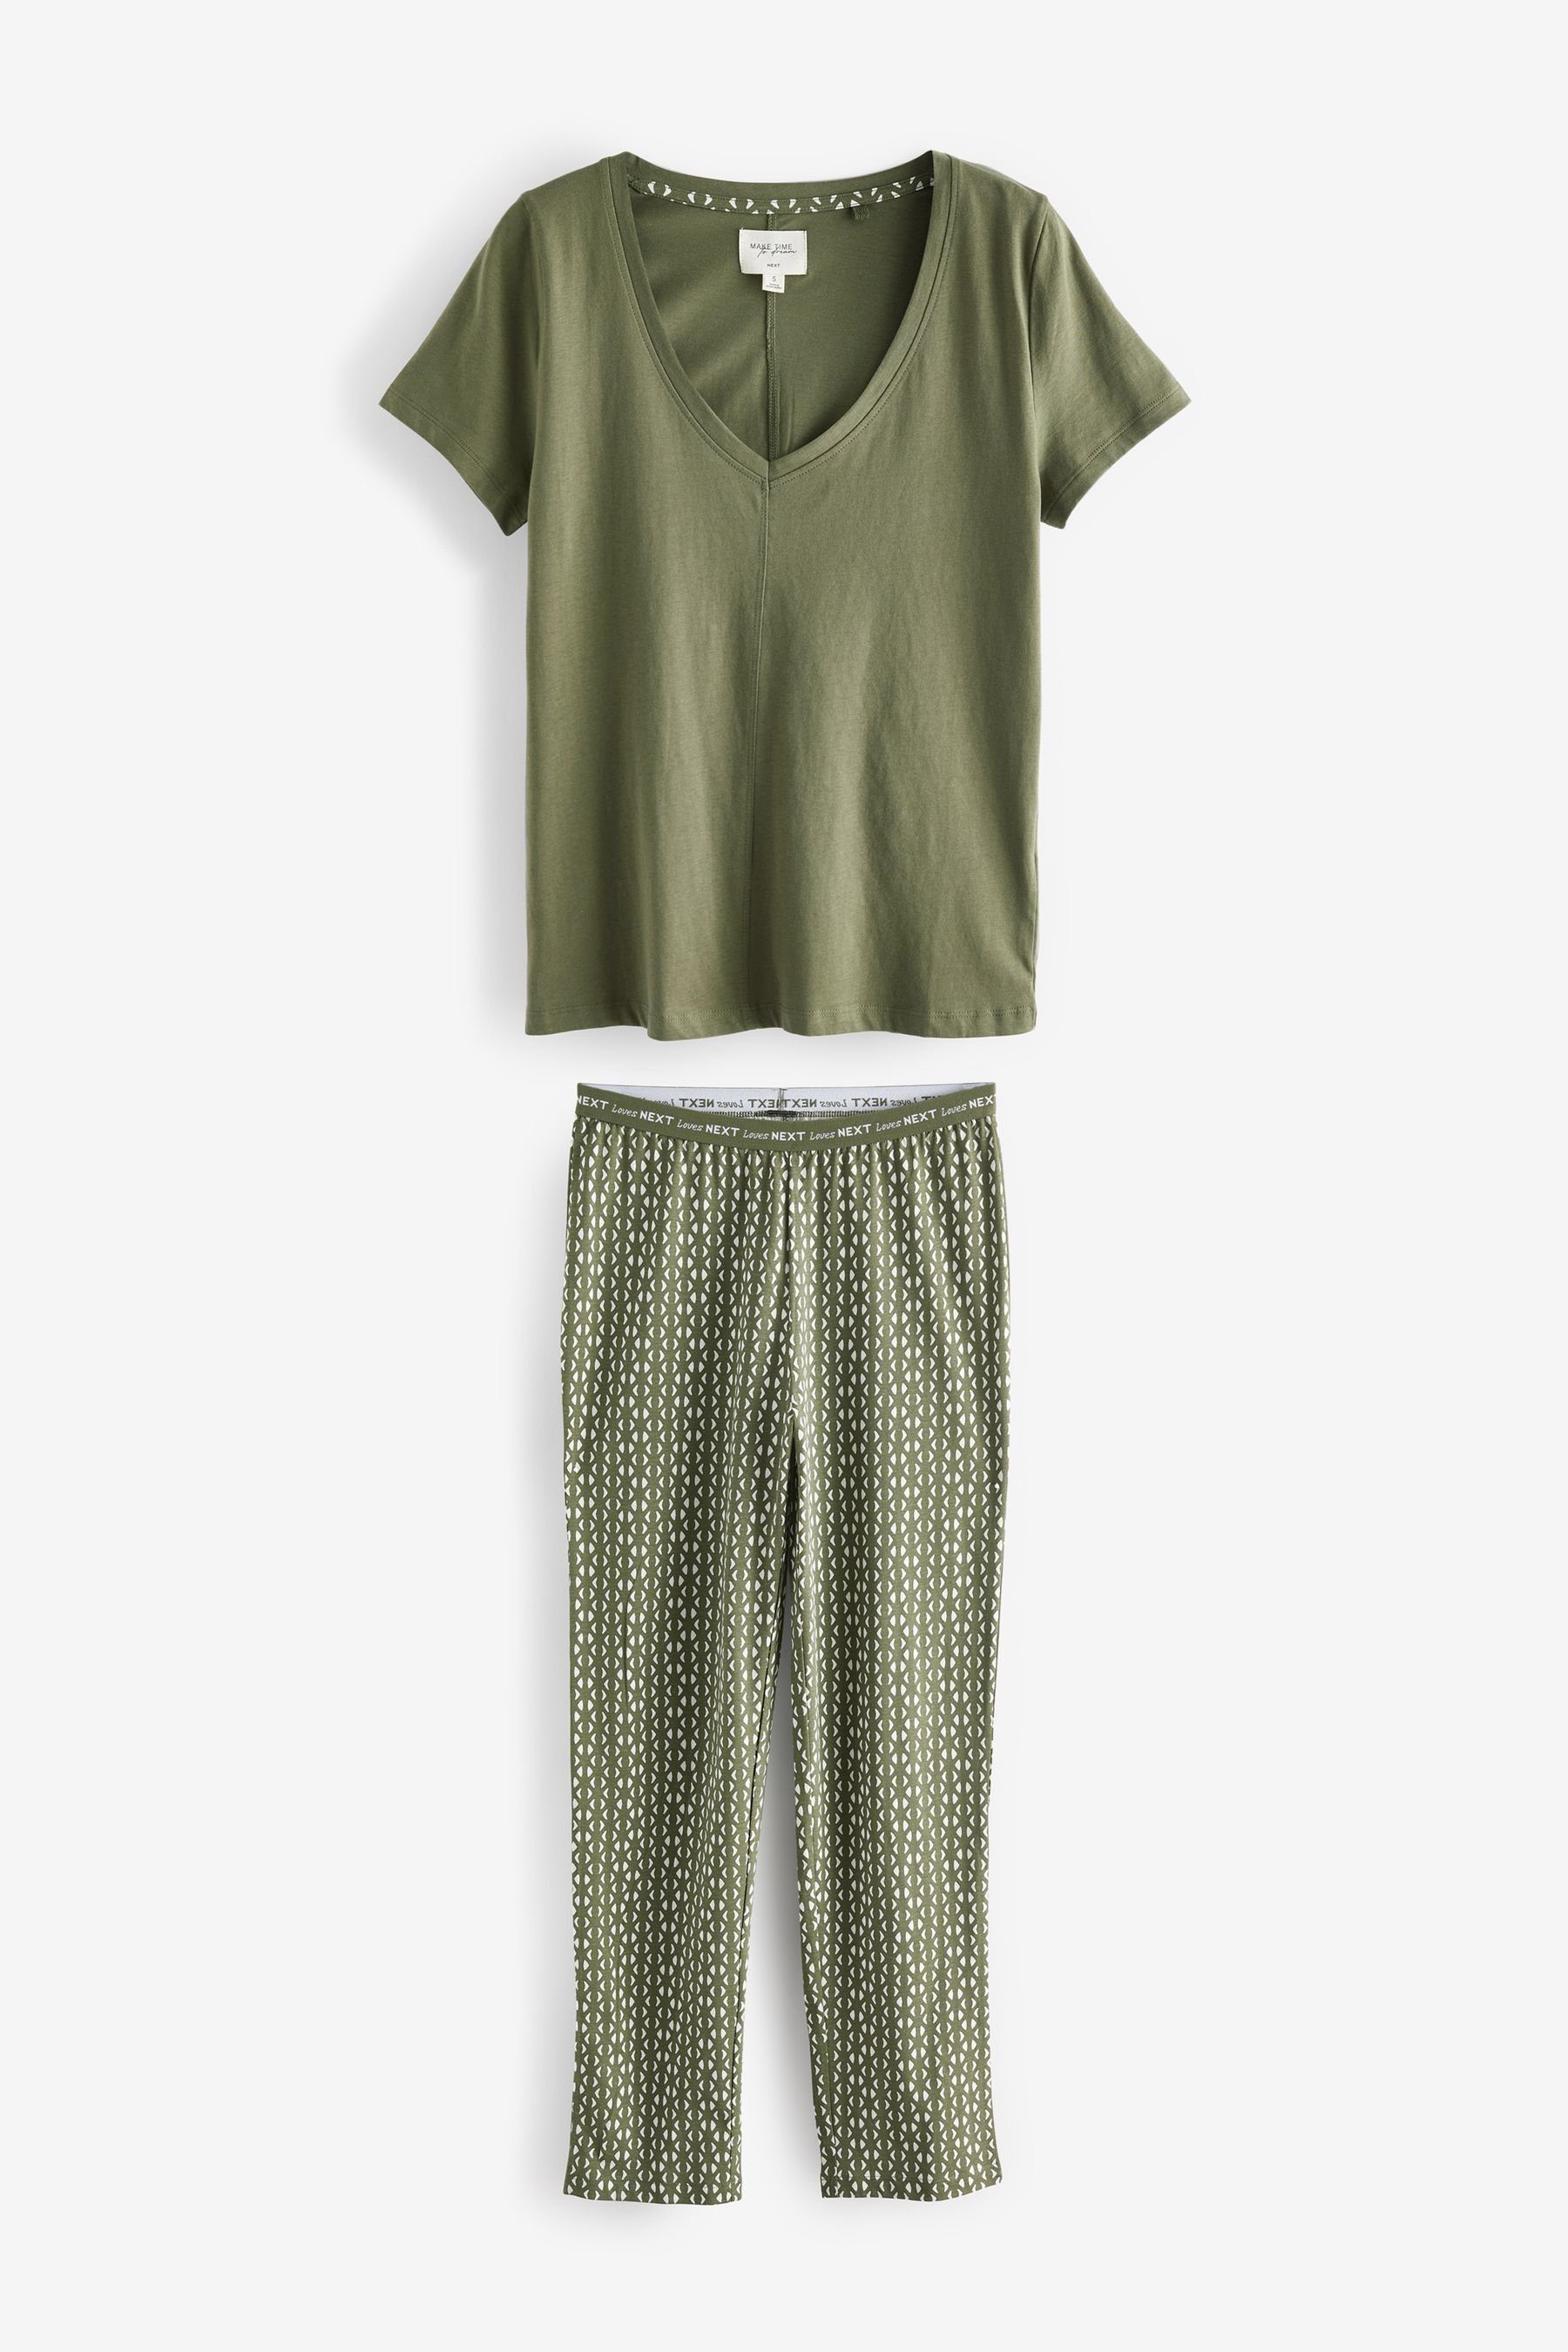 Next Pyjama Kurzärmeliger Baumwoll-Pyjama (2 tlg) Khaki